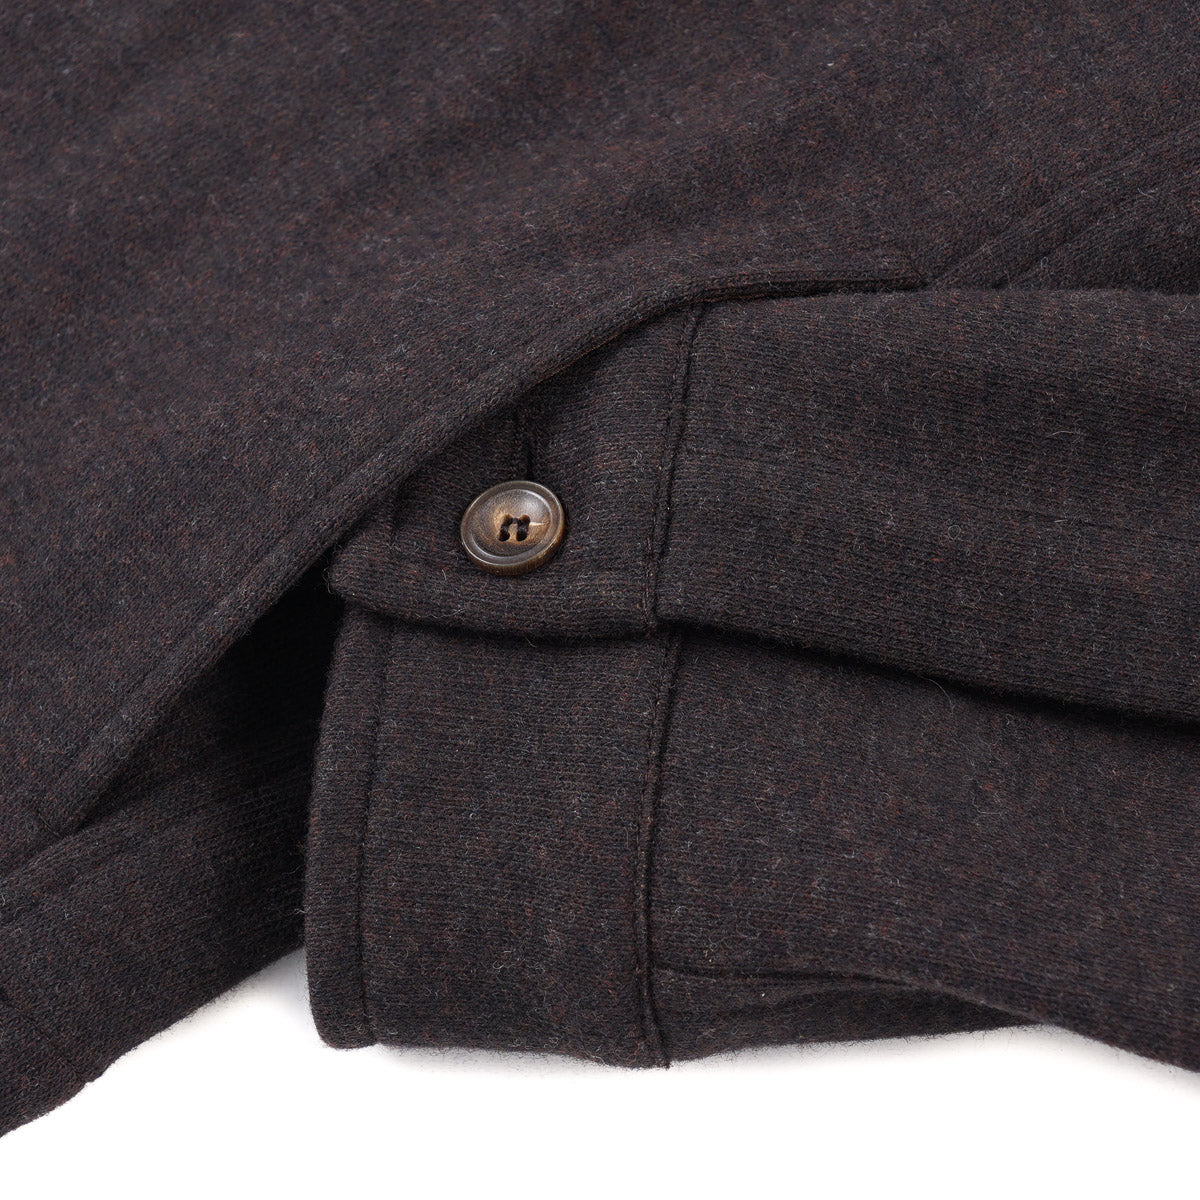 Marco Pescarolo Jersey Flannel Wool Jacket - Top Shelf Apparel